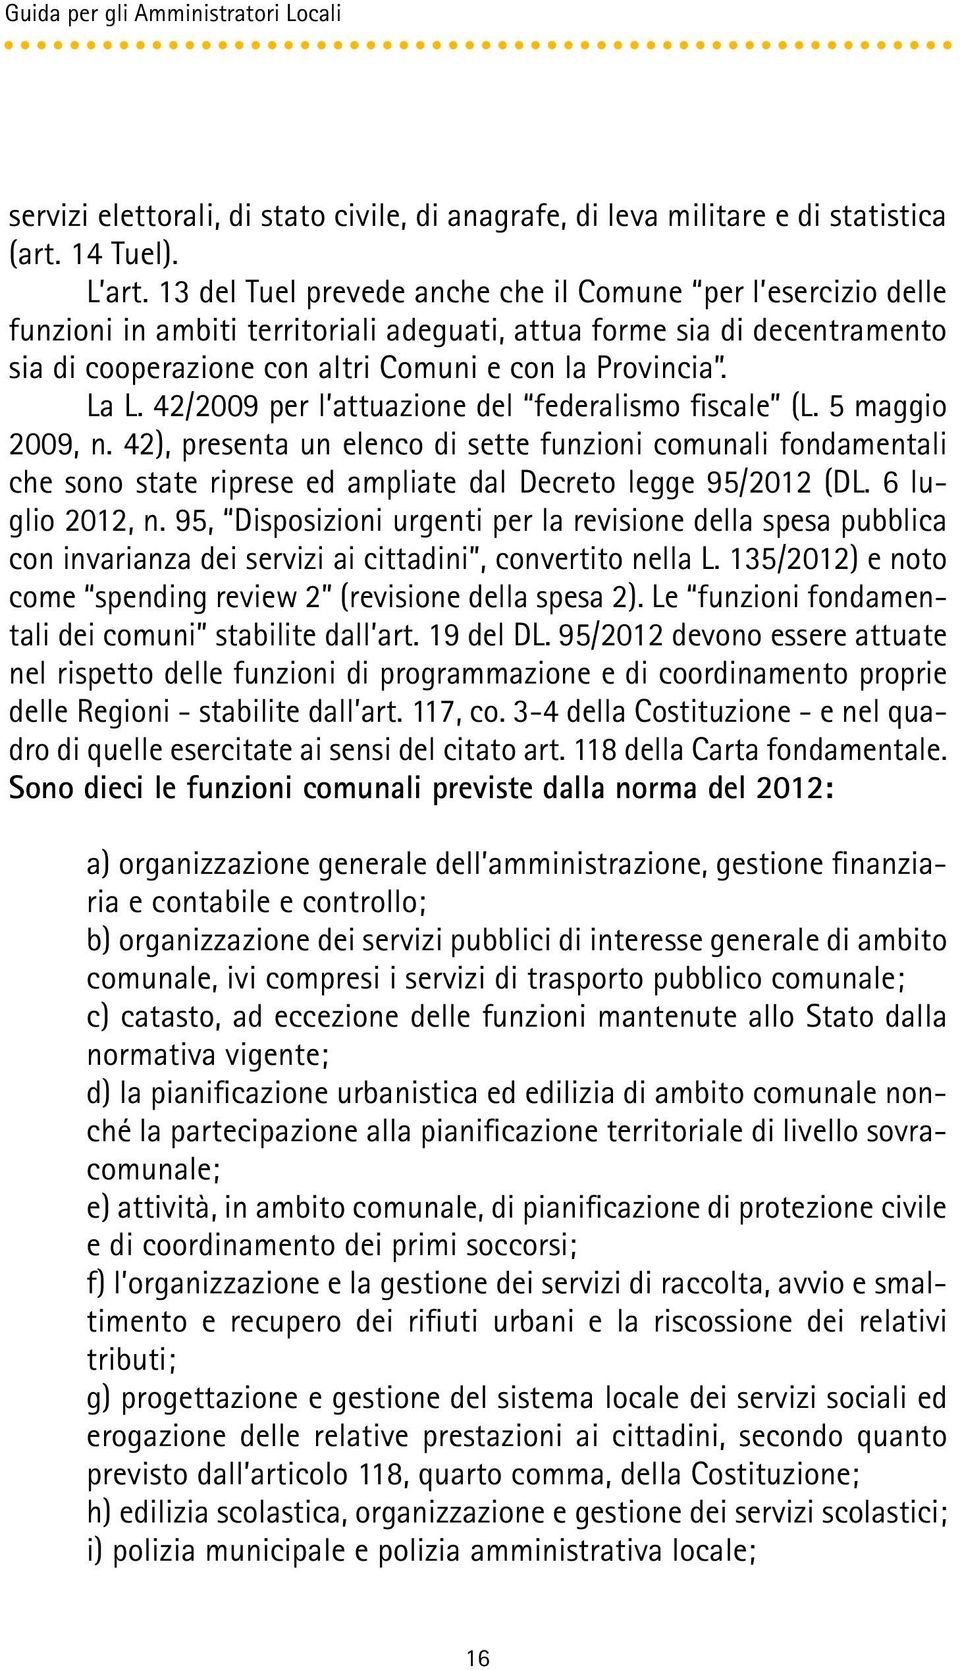 42/2009 per l attuazione del federalismo fiscale (L. 5 maggio 2009, n. 42), presenta un elenco di sette funzioni comunali fondamentali che sono state riprese ed ampliate dal Decreto legge 95/2012 (DL.